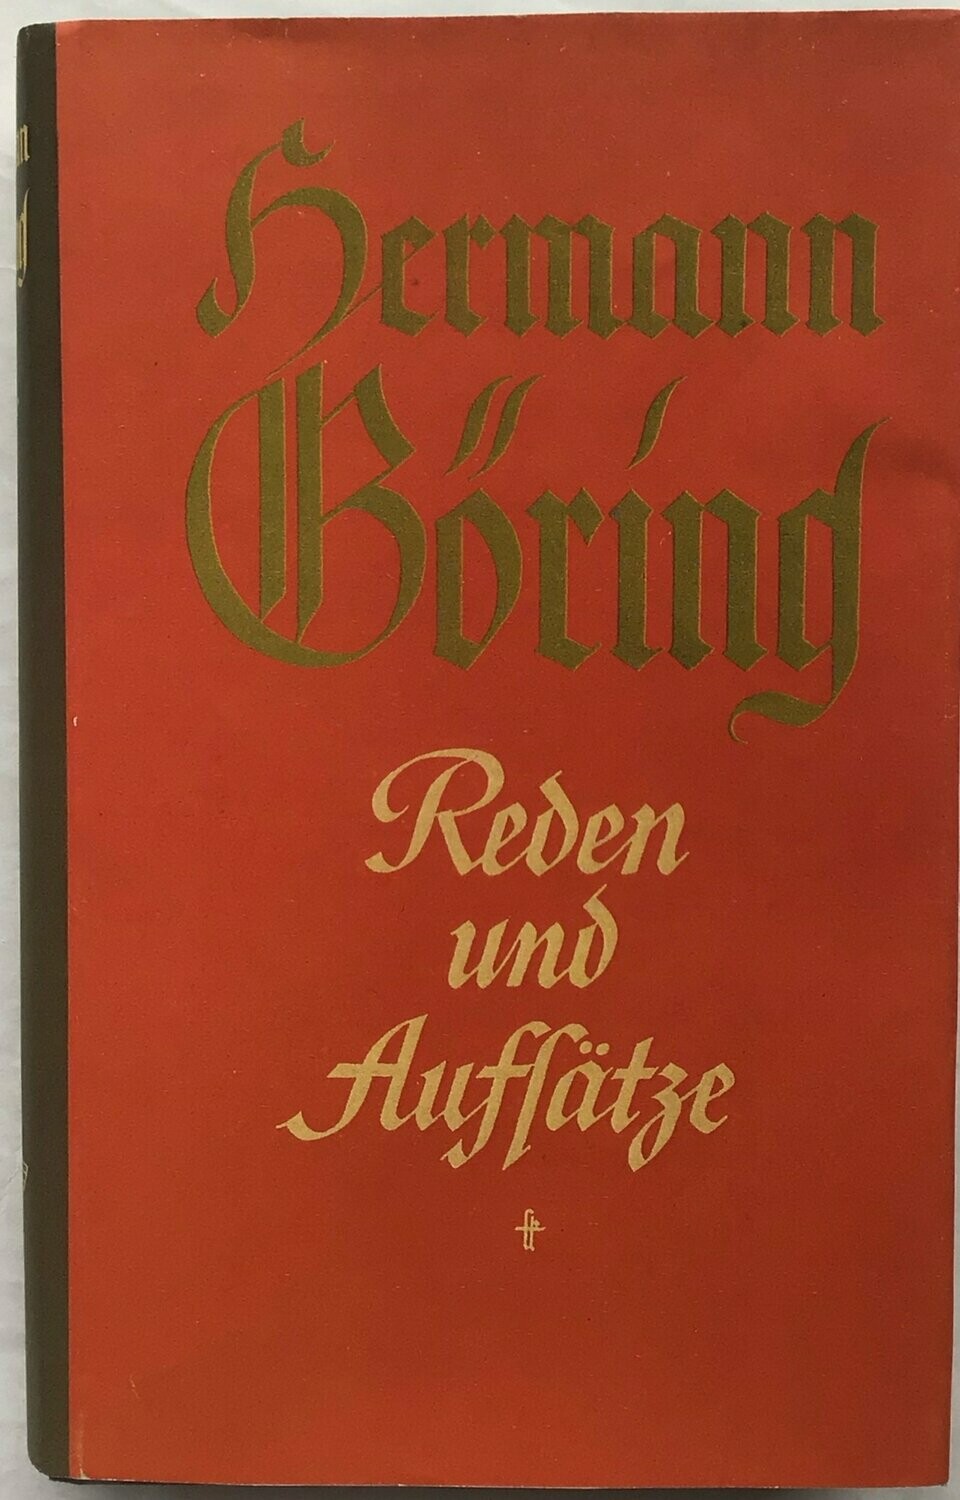 Hermann Göring - Reden und Aufsätze - Ganzleinenausgabe mit Schutzumschlag (Kopie) - 5. Auflage aus 1941